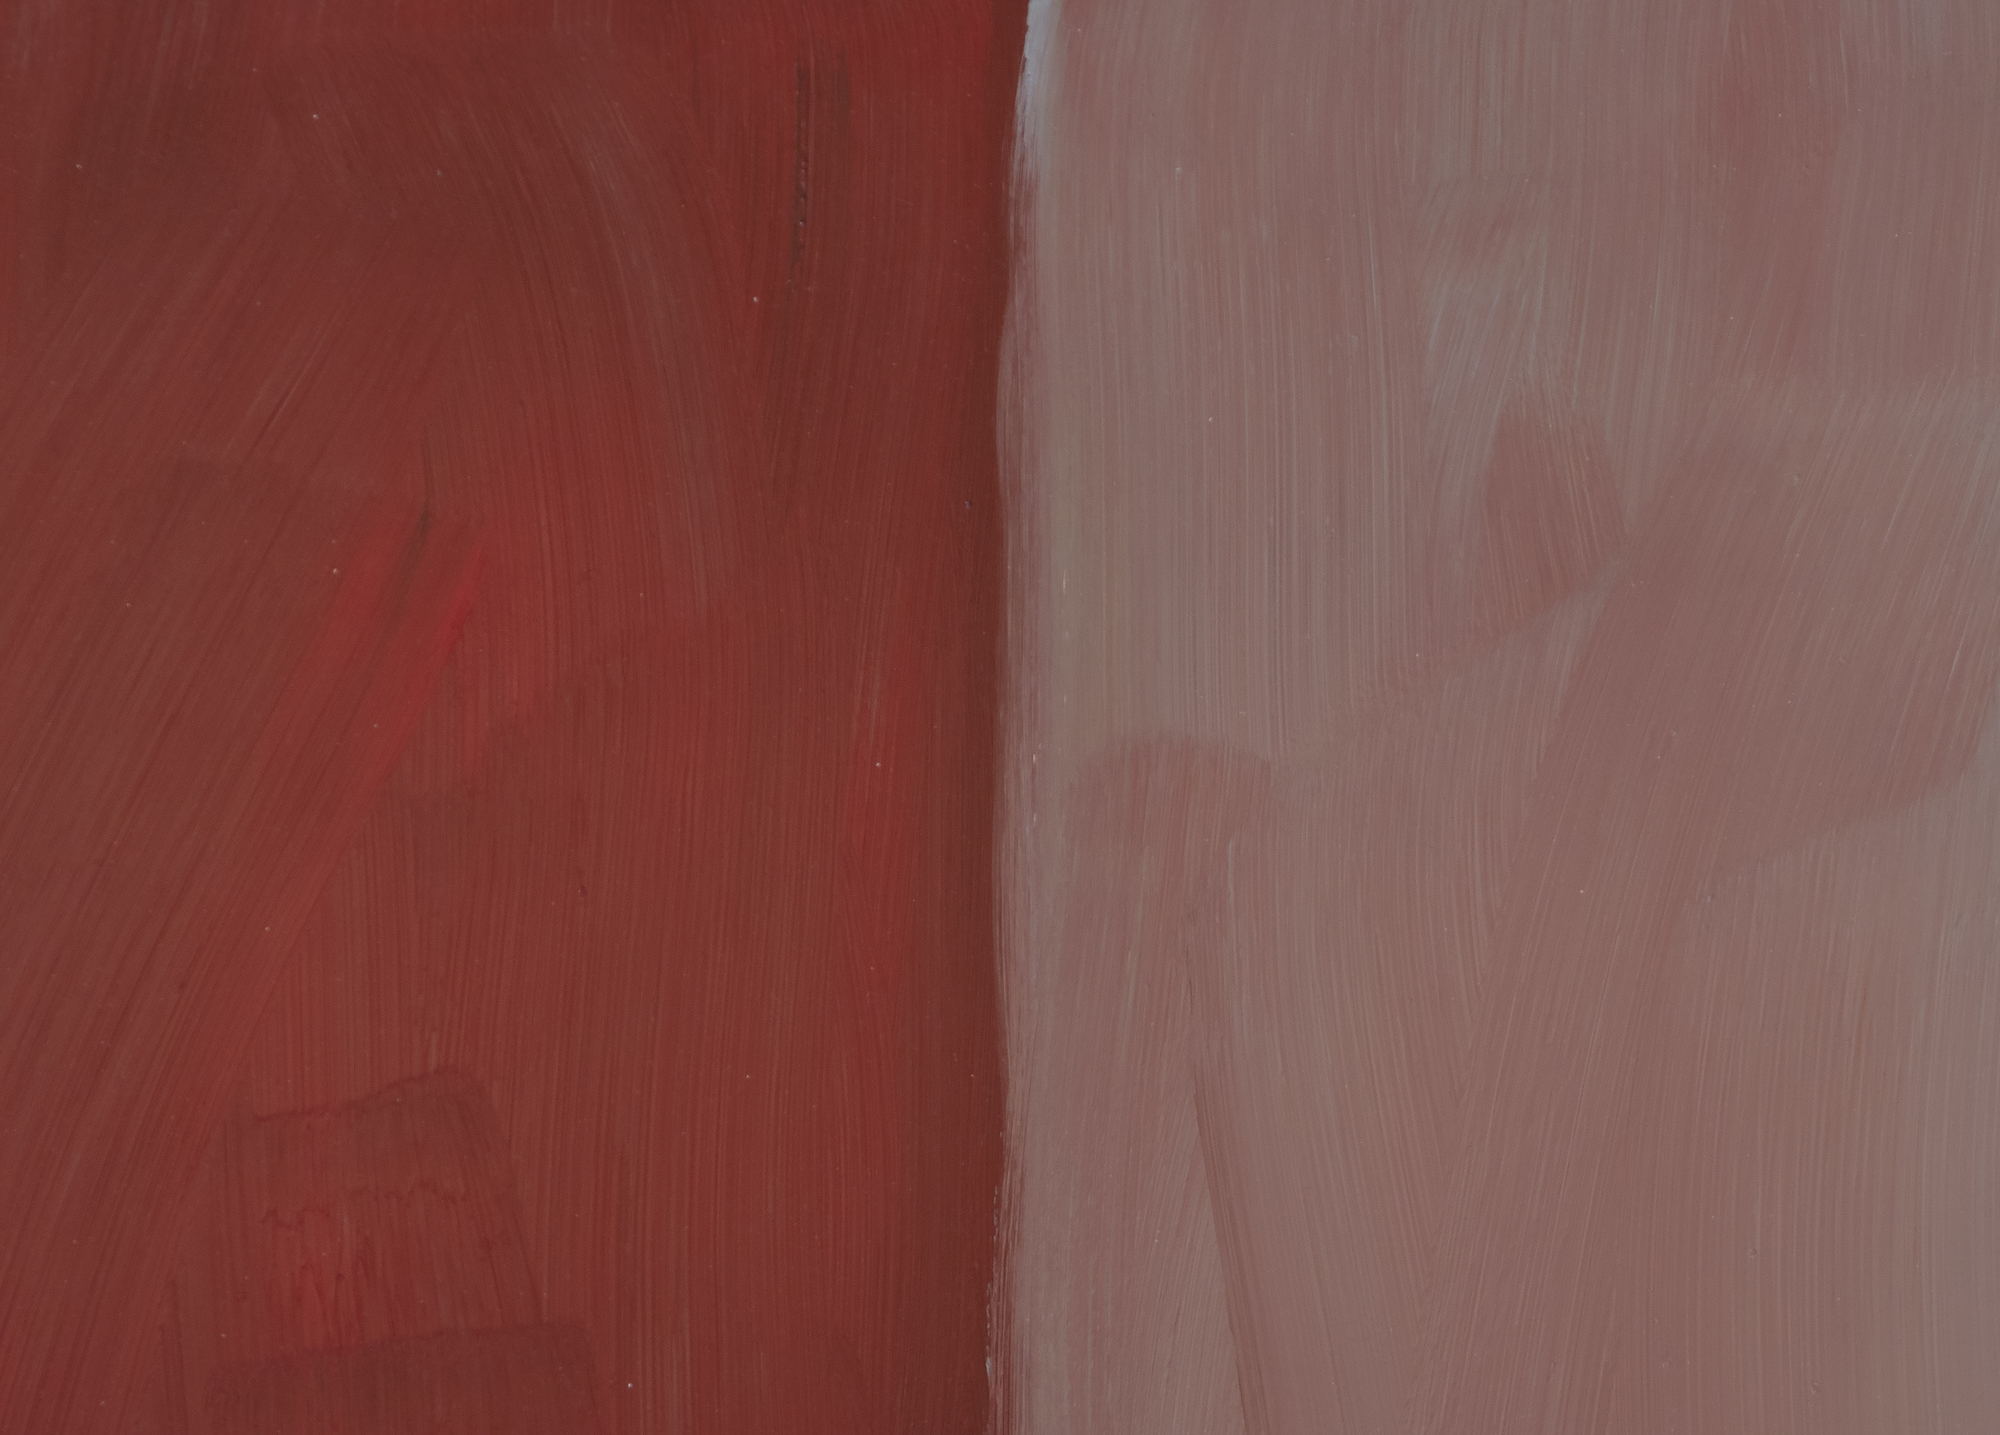 שון סקאלי - אדום אפור - שמן על אלומיניום - 85 x 75 אינץ'.